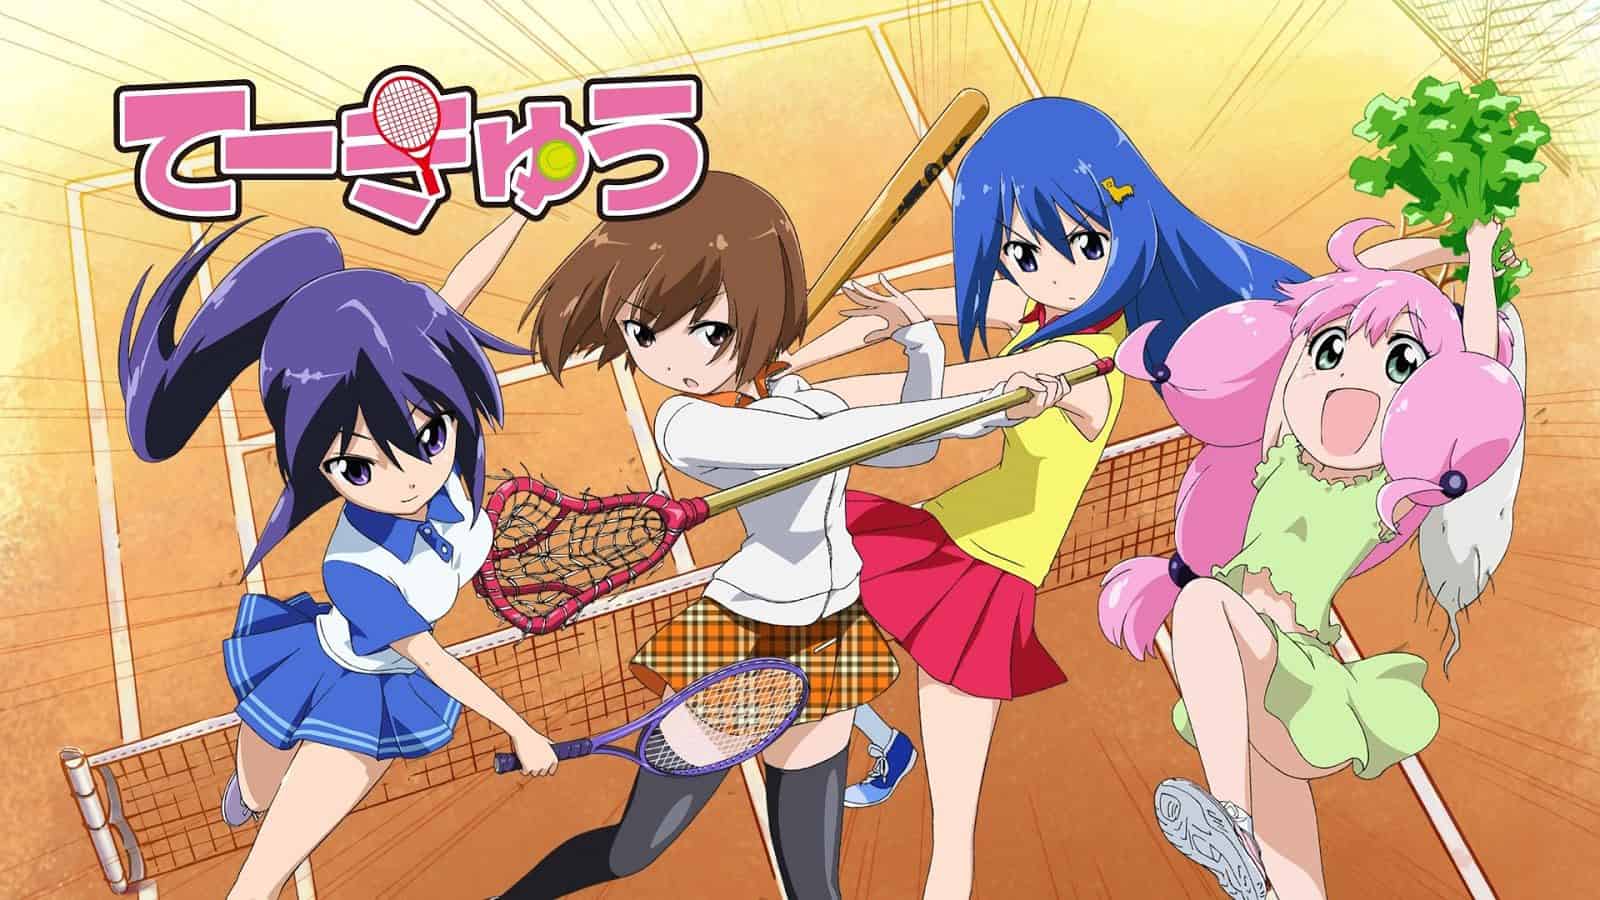 four girls playing tennis.